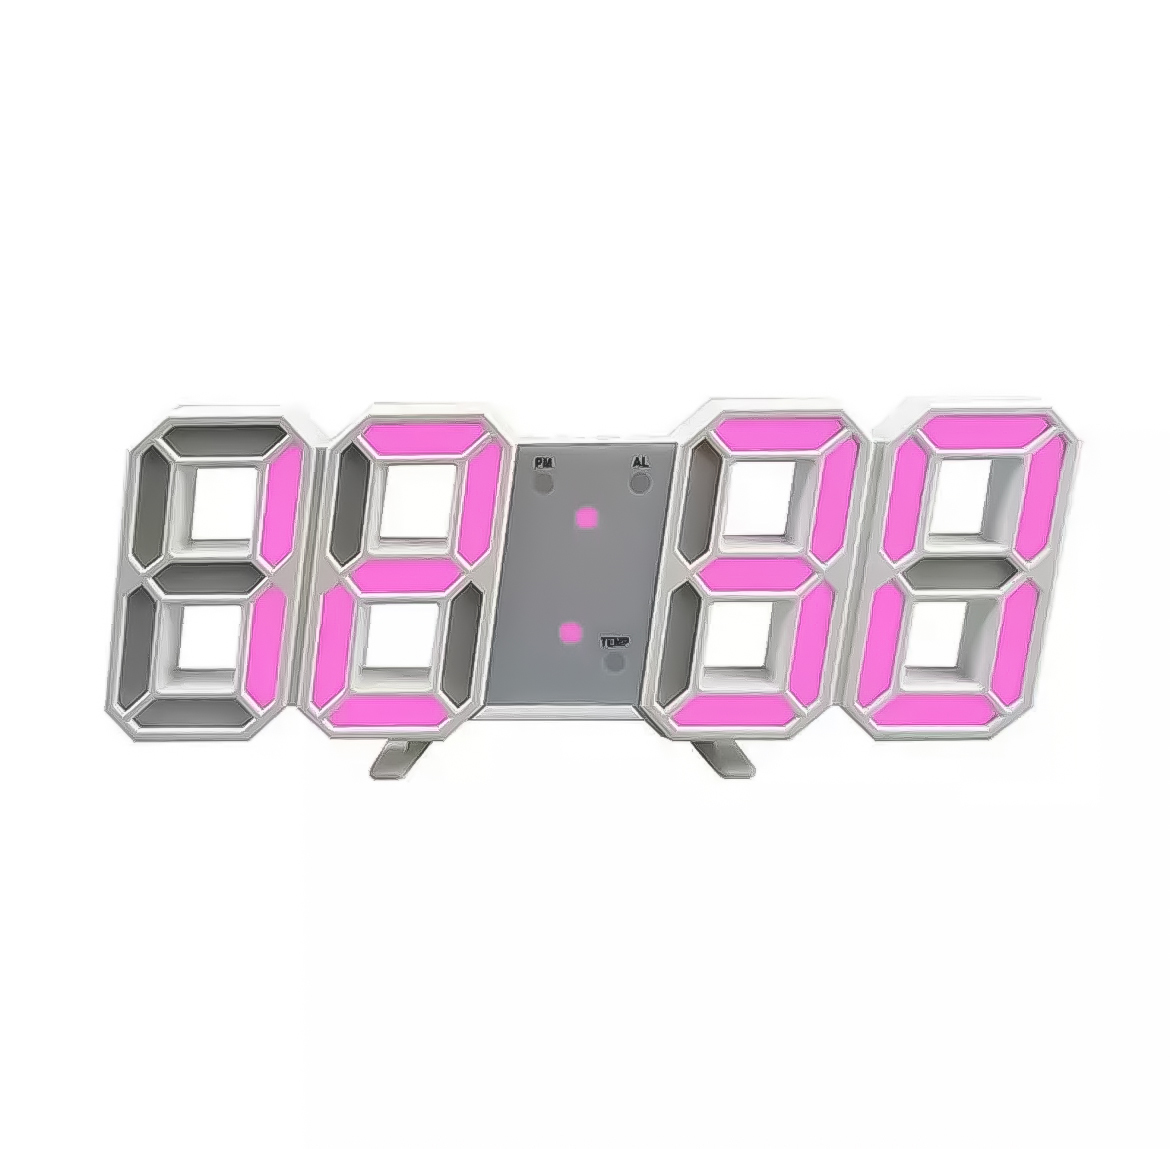 389円 【誠実】 3D立体時計 ピンク LED壁掛け時計 置き時計 両用 デジタル時計 インスタ映え 置き型 LED デジタル アラーム付 目覚まし 時計☆